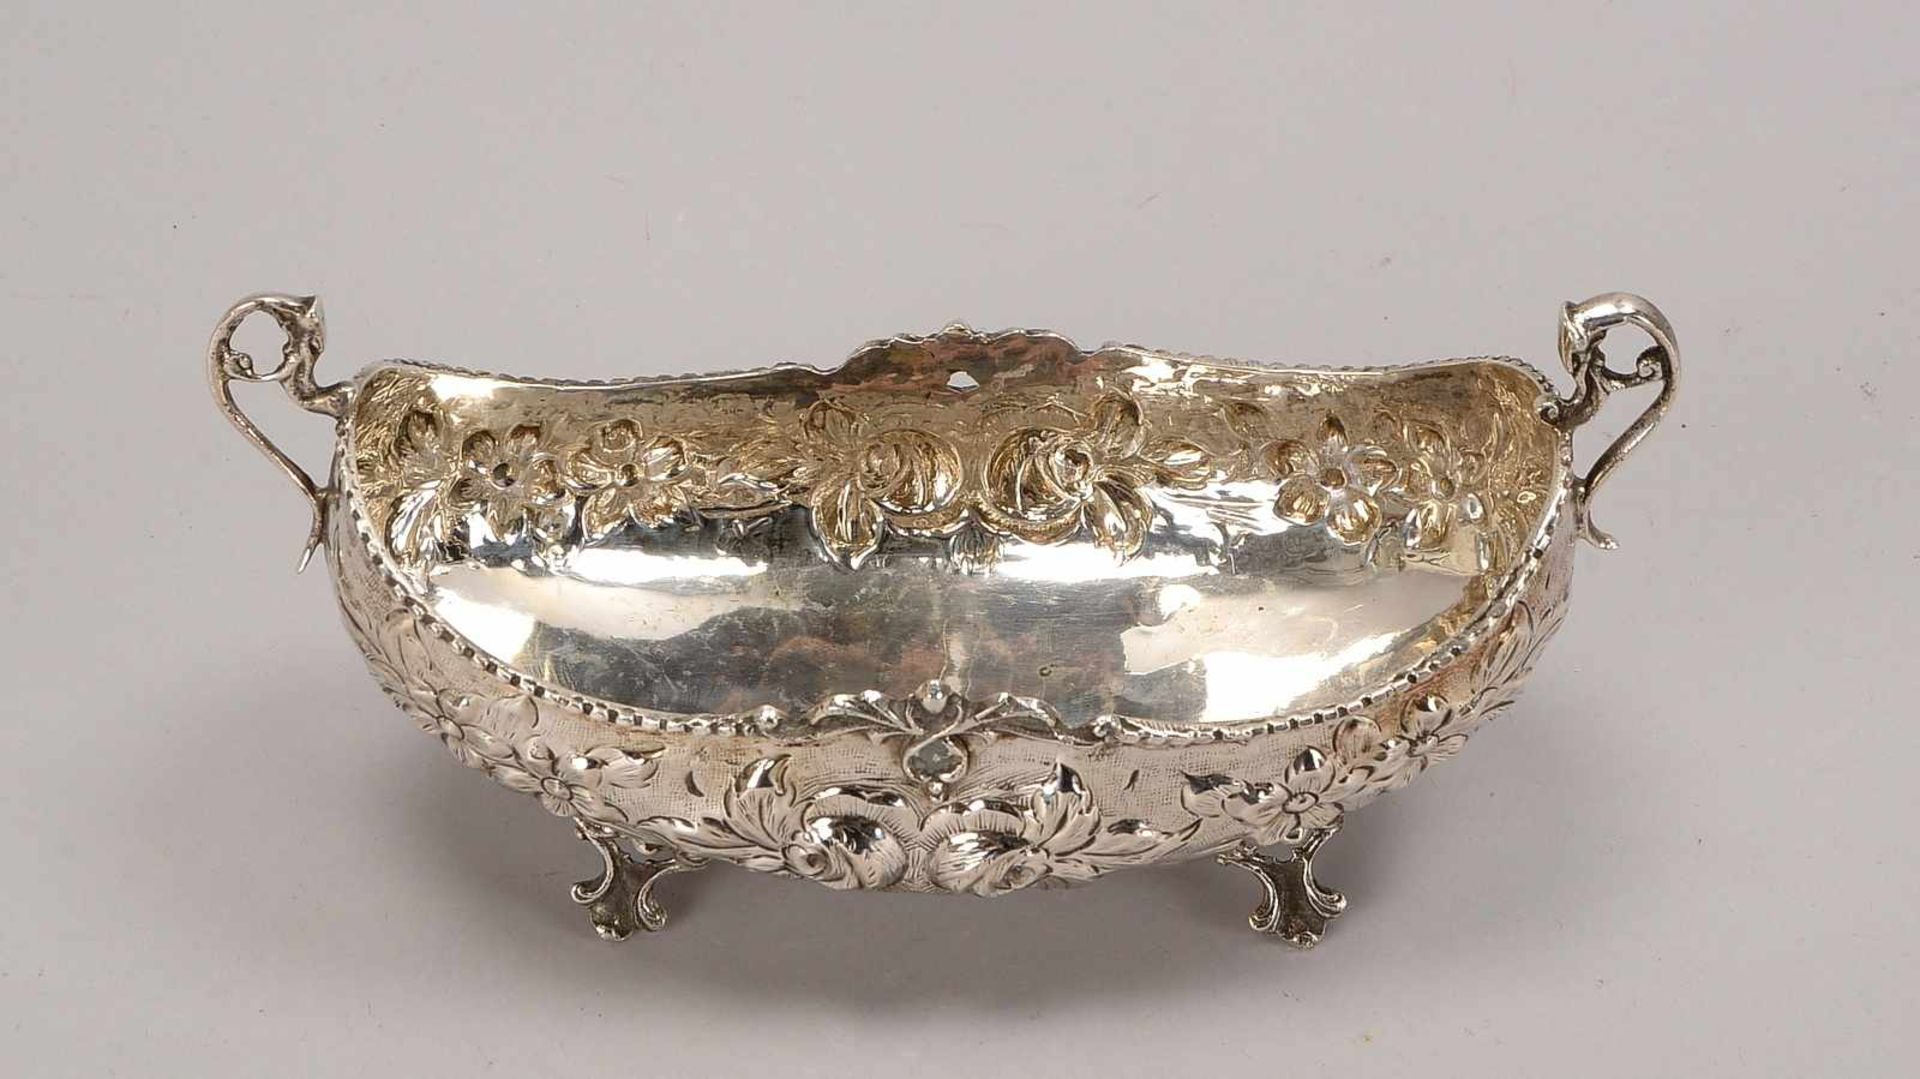 Schale, 800 Silber, ovale Form, mit 2x seitlichen Handhaben, Korpus auf 4x Füßen, punziert ' - Bild 2 aus 3